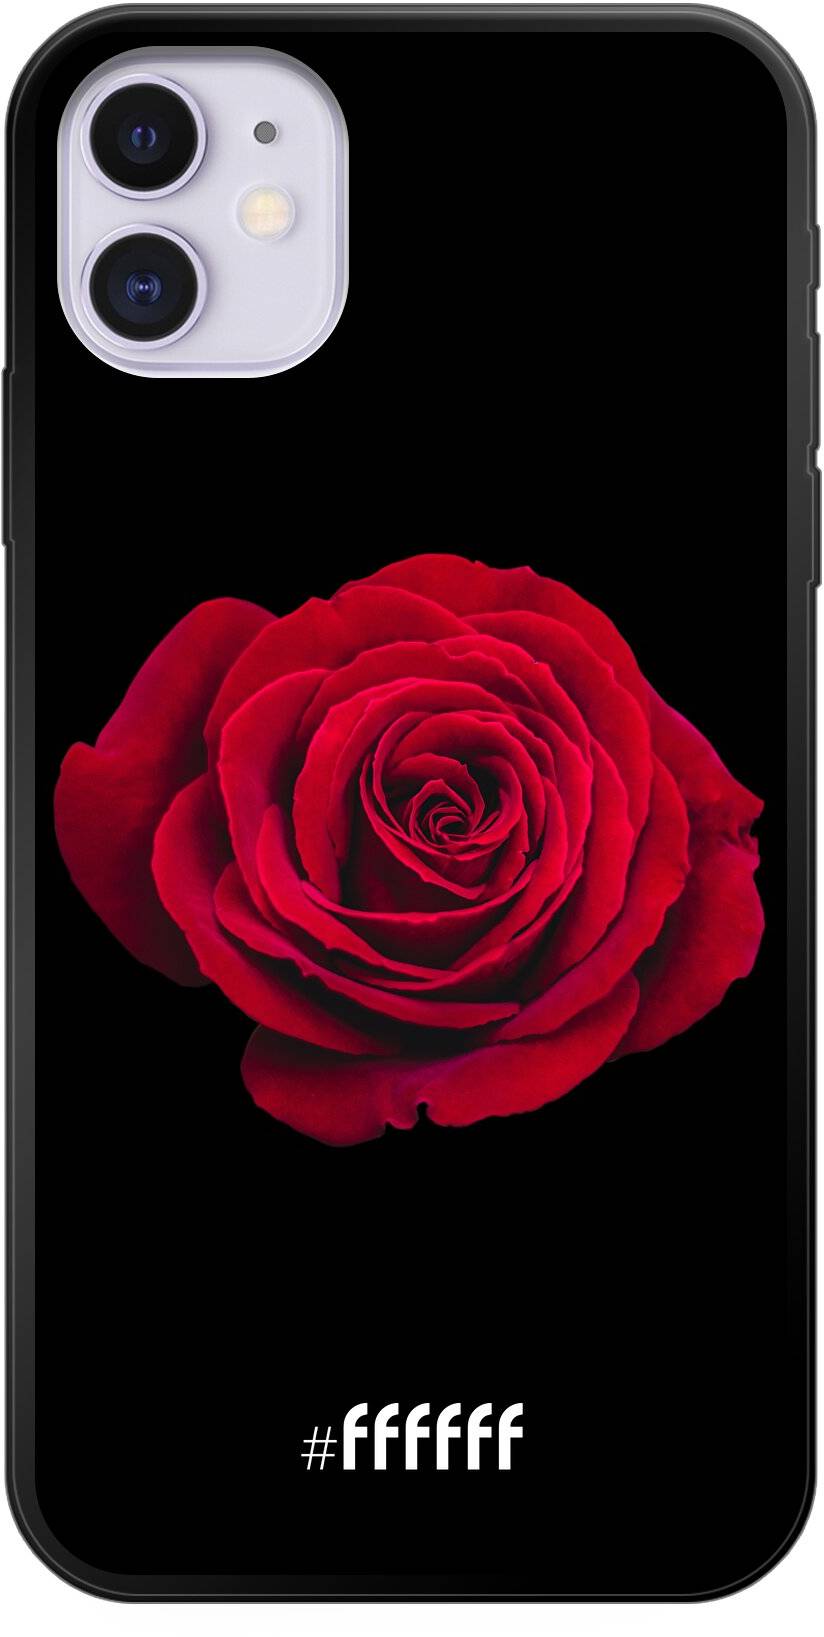 Radiant Rose iPhone 11